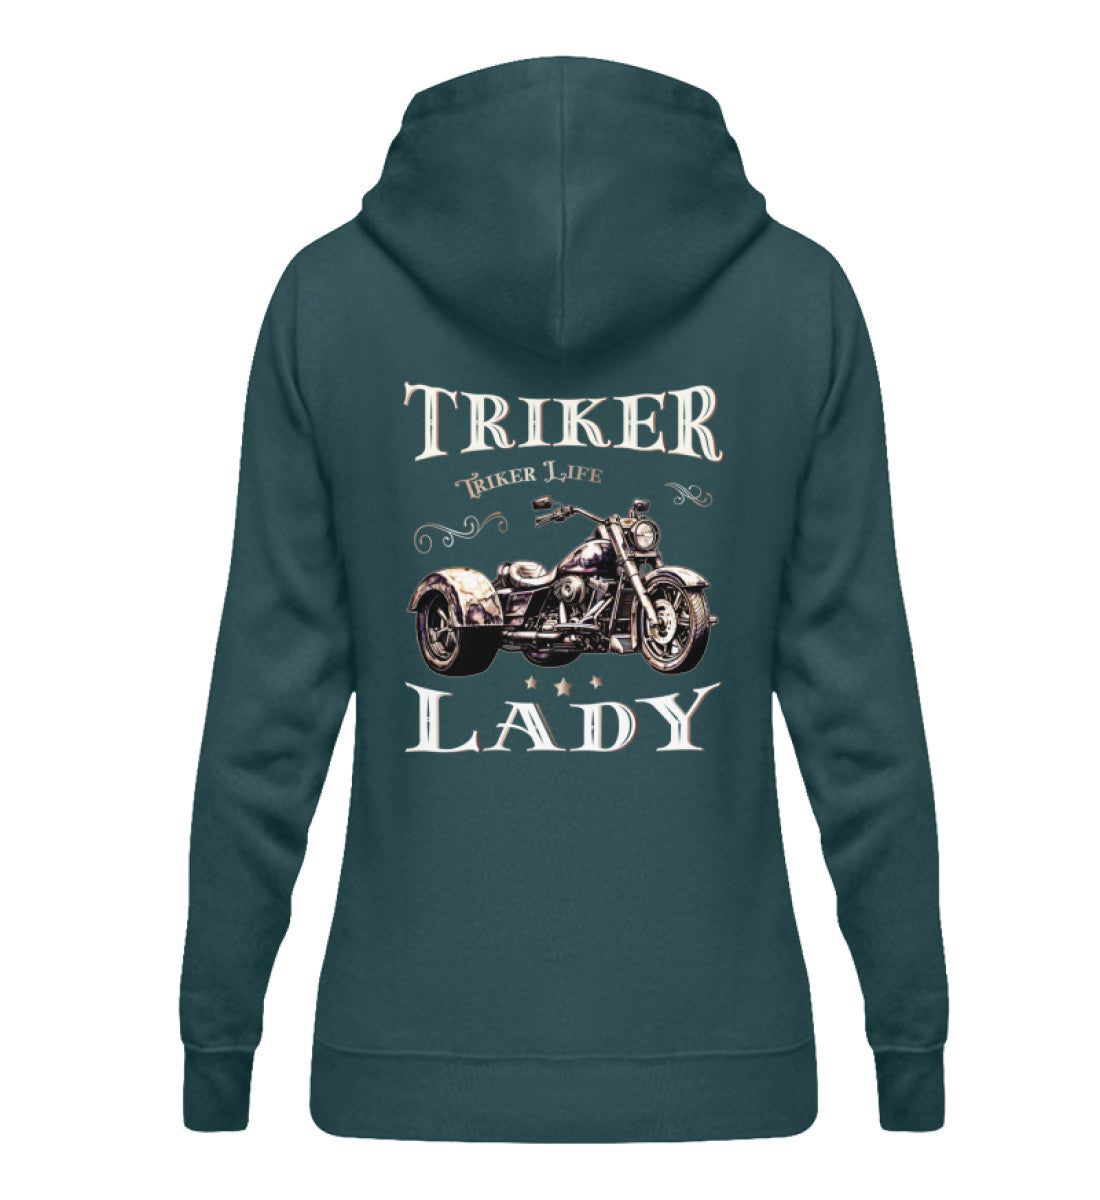 Ein Damen Hoodie für Trike Fahrerinnen von Wingbikers mit dem Aufdruck, Triker Lady - Triker Life, im vintage Stil, als Back Print, in petrol türkis.